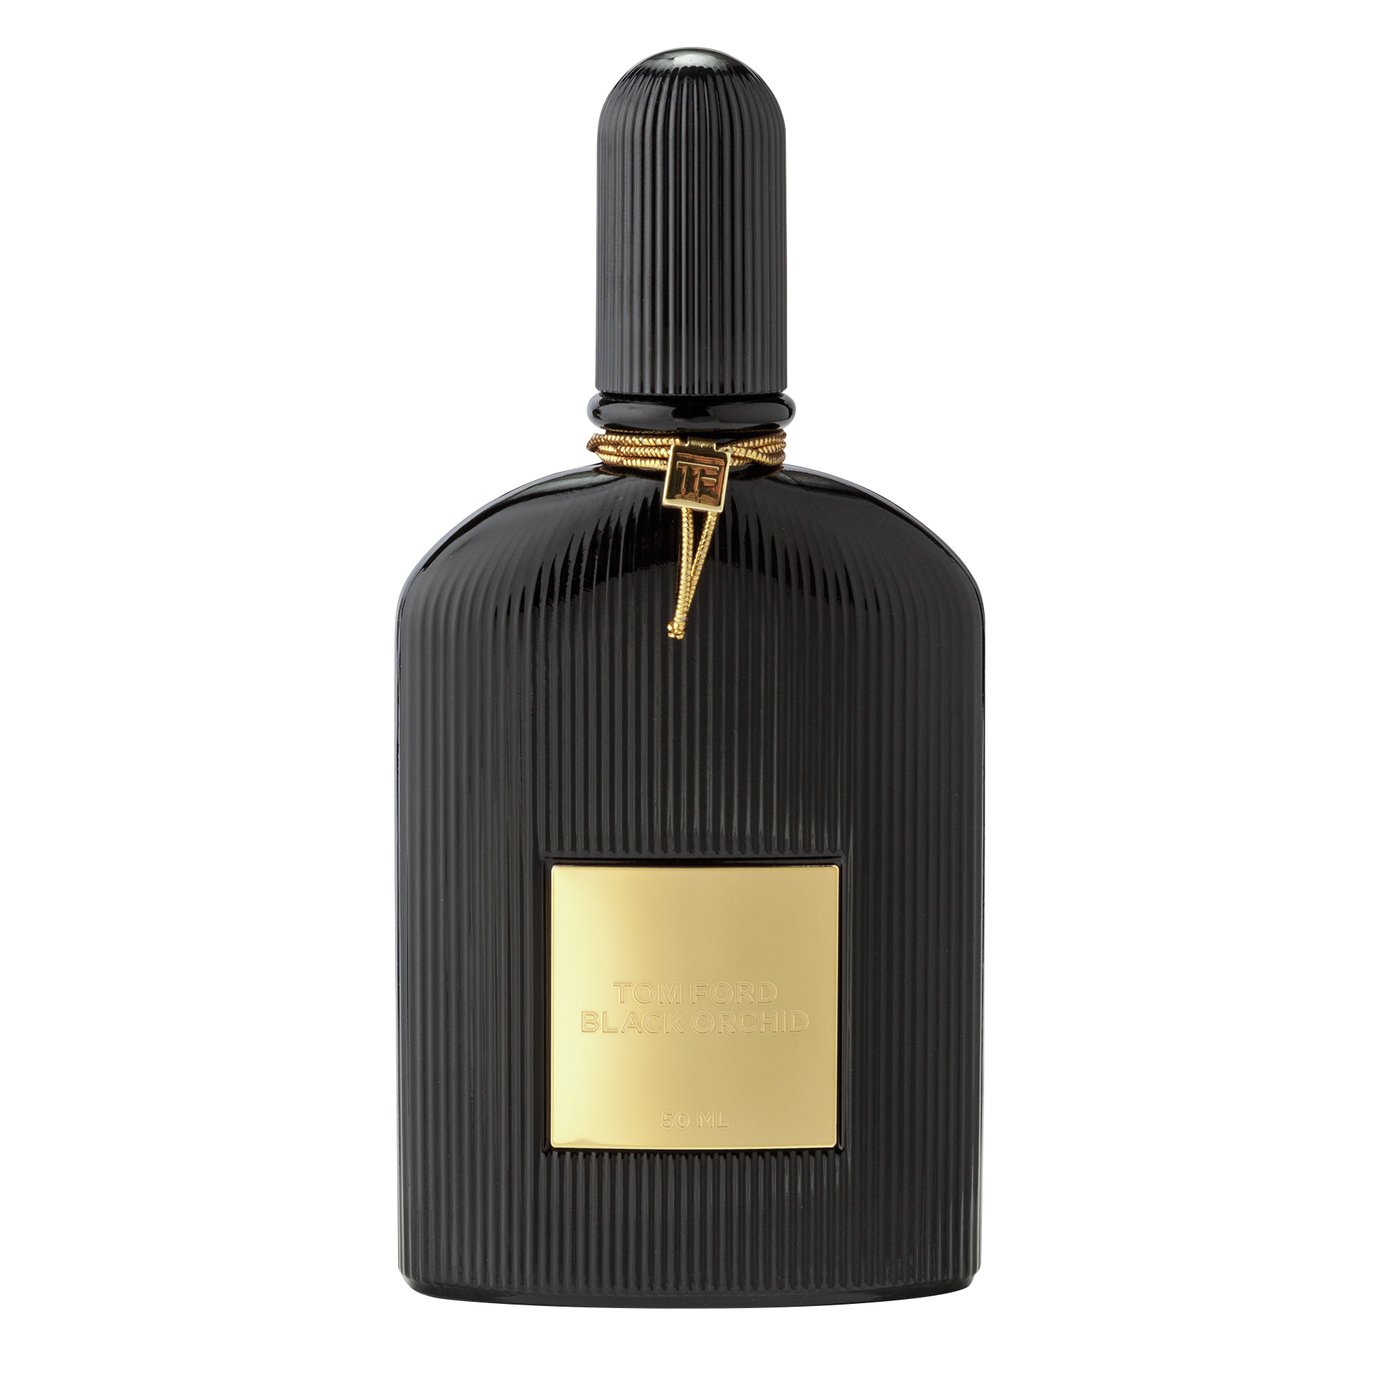 Tom Ford Black Orchid Eau de Parfum - 50ml